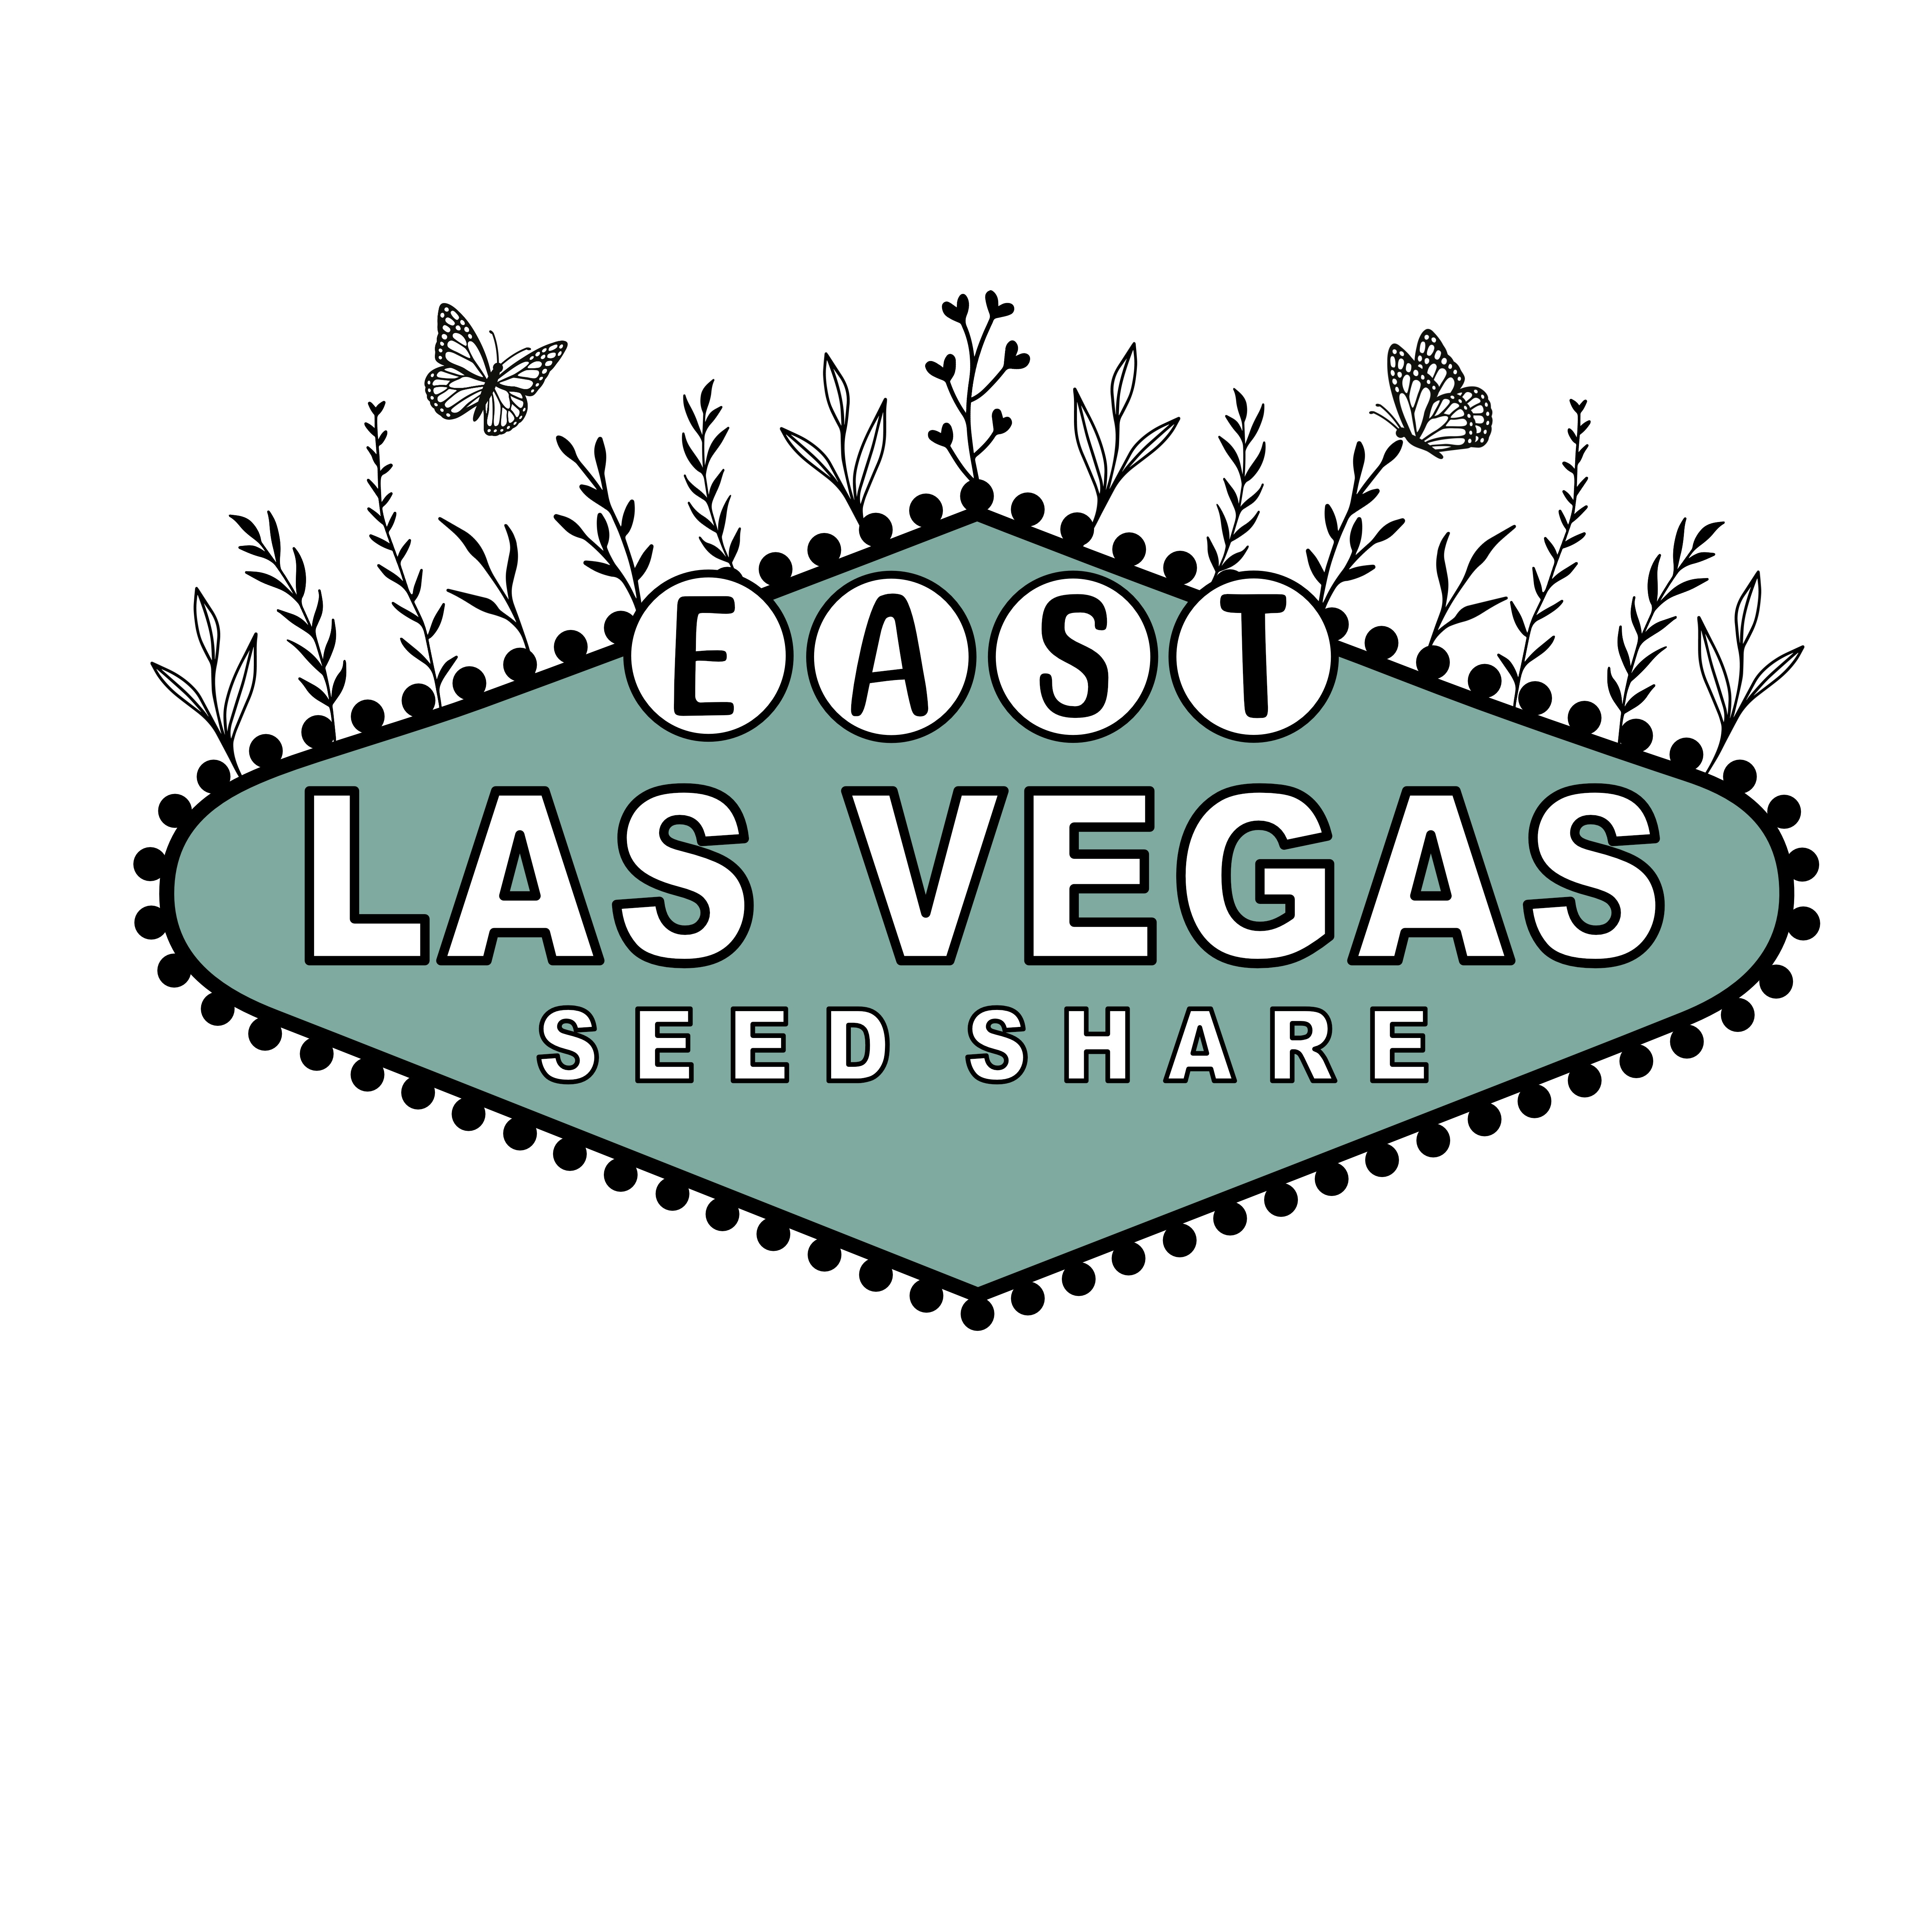 East Las Vegas Seed Share